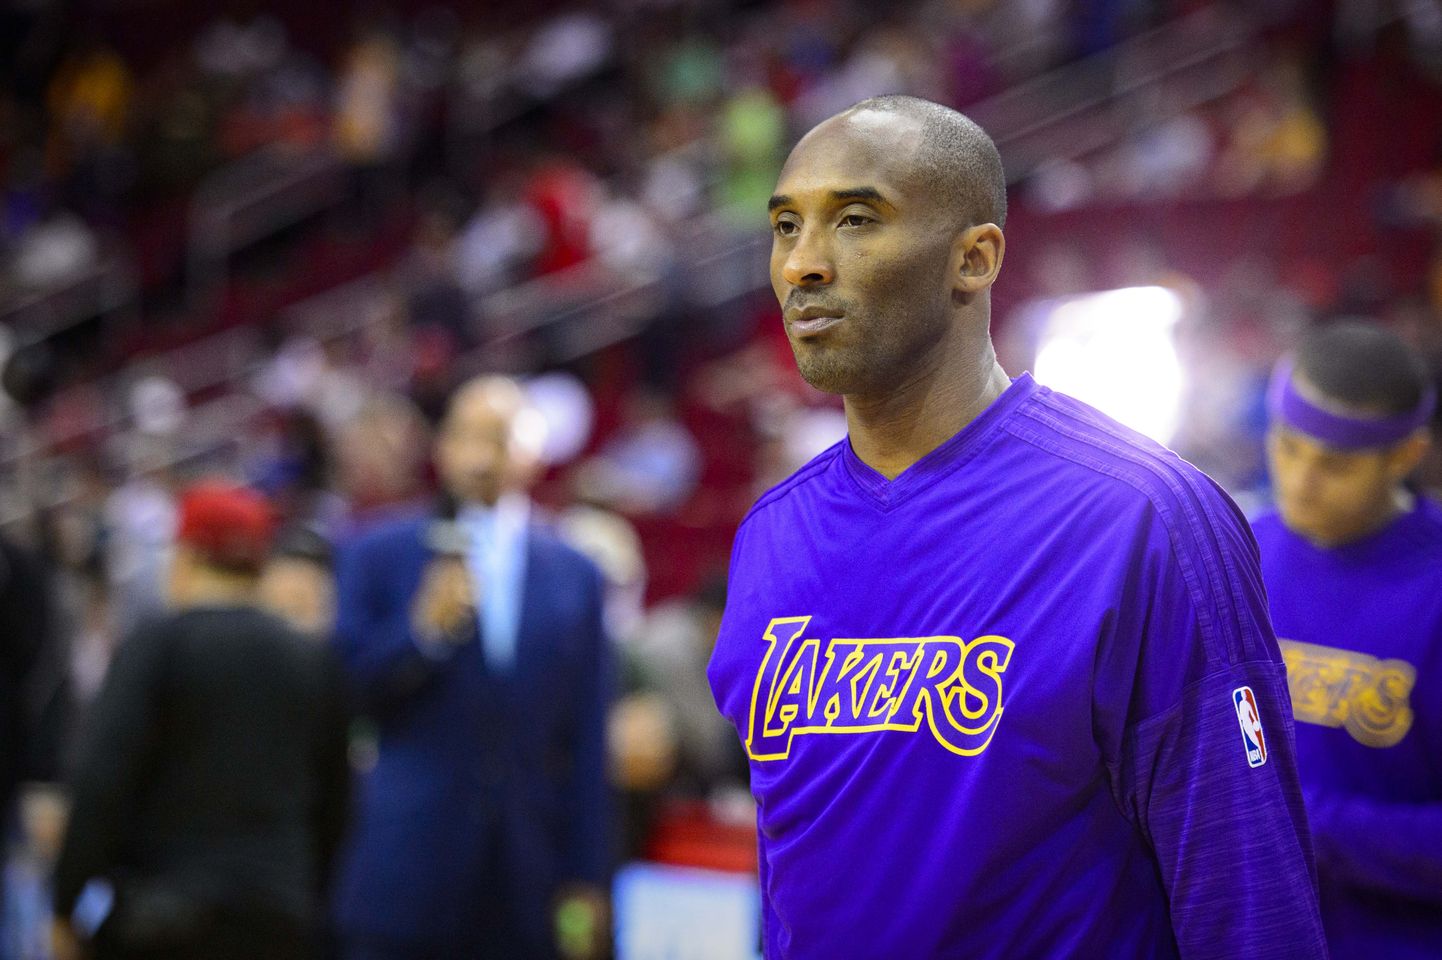 Los Angeles Lakersi korvpallur Kobe Bryant hukkus põhapäeval helikopteriõnnetuses.